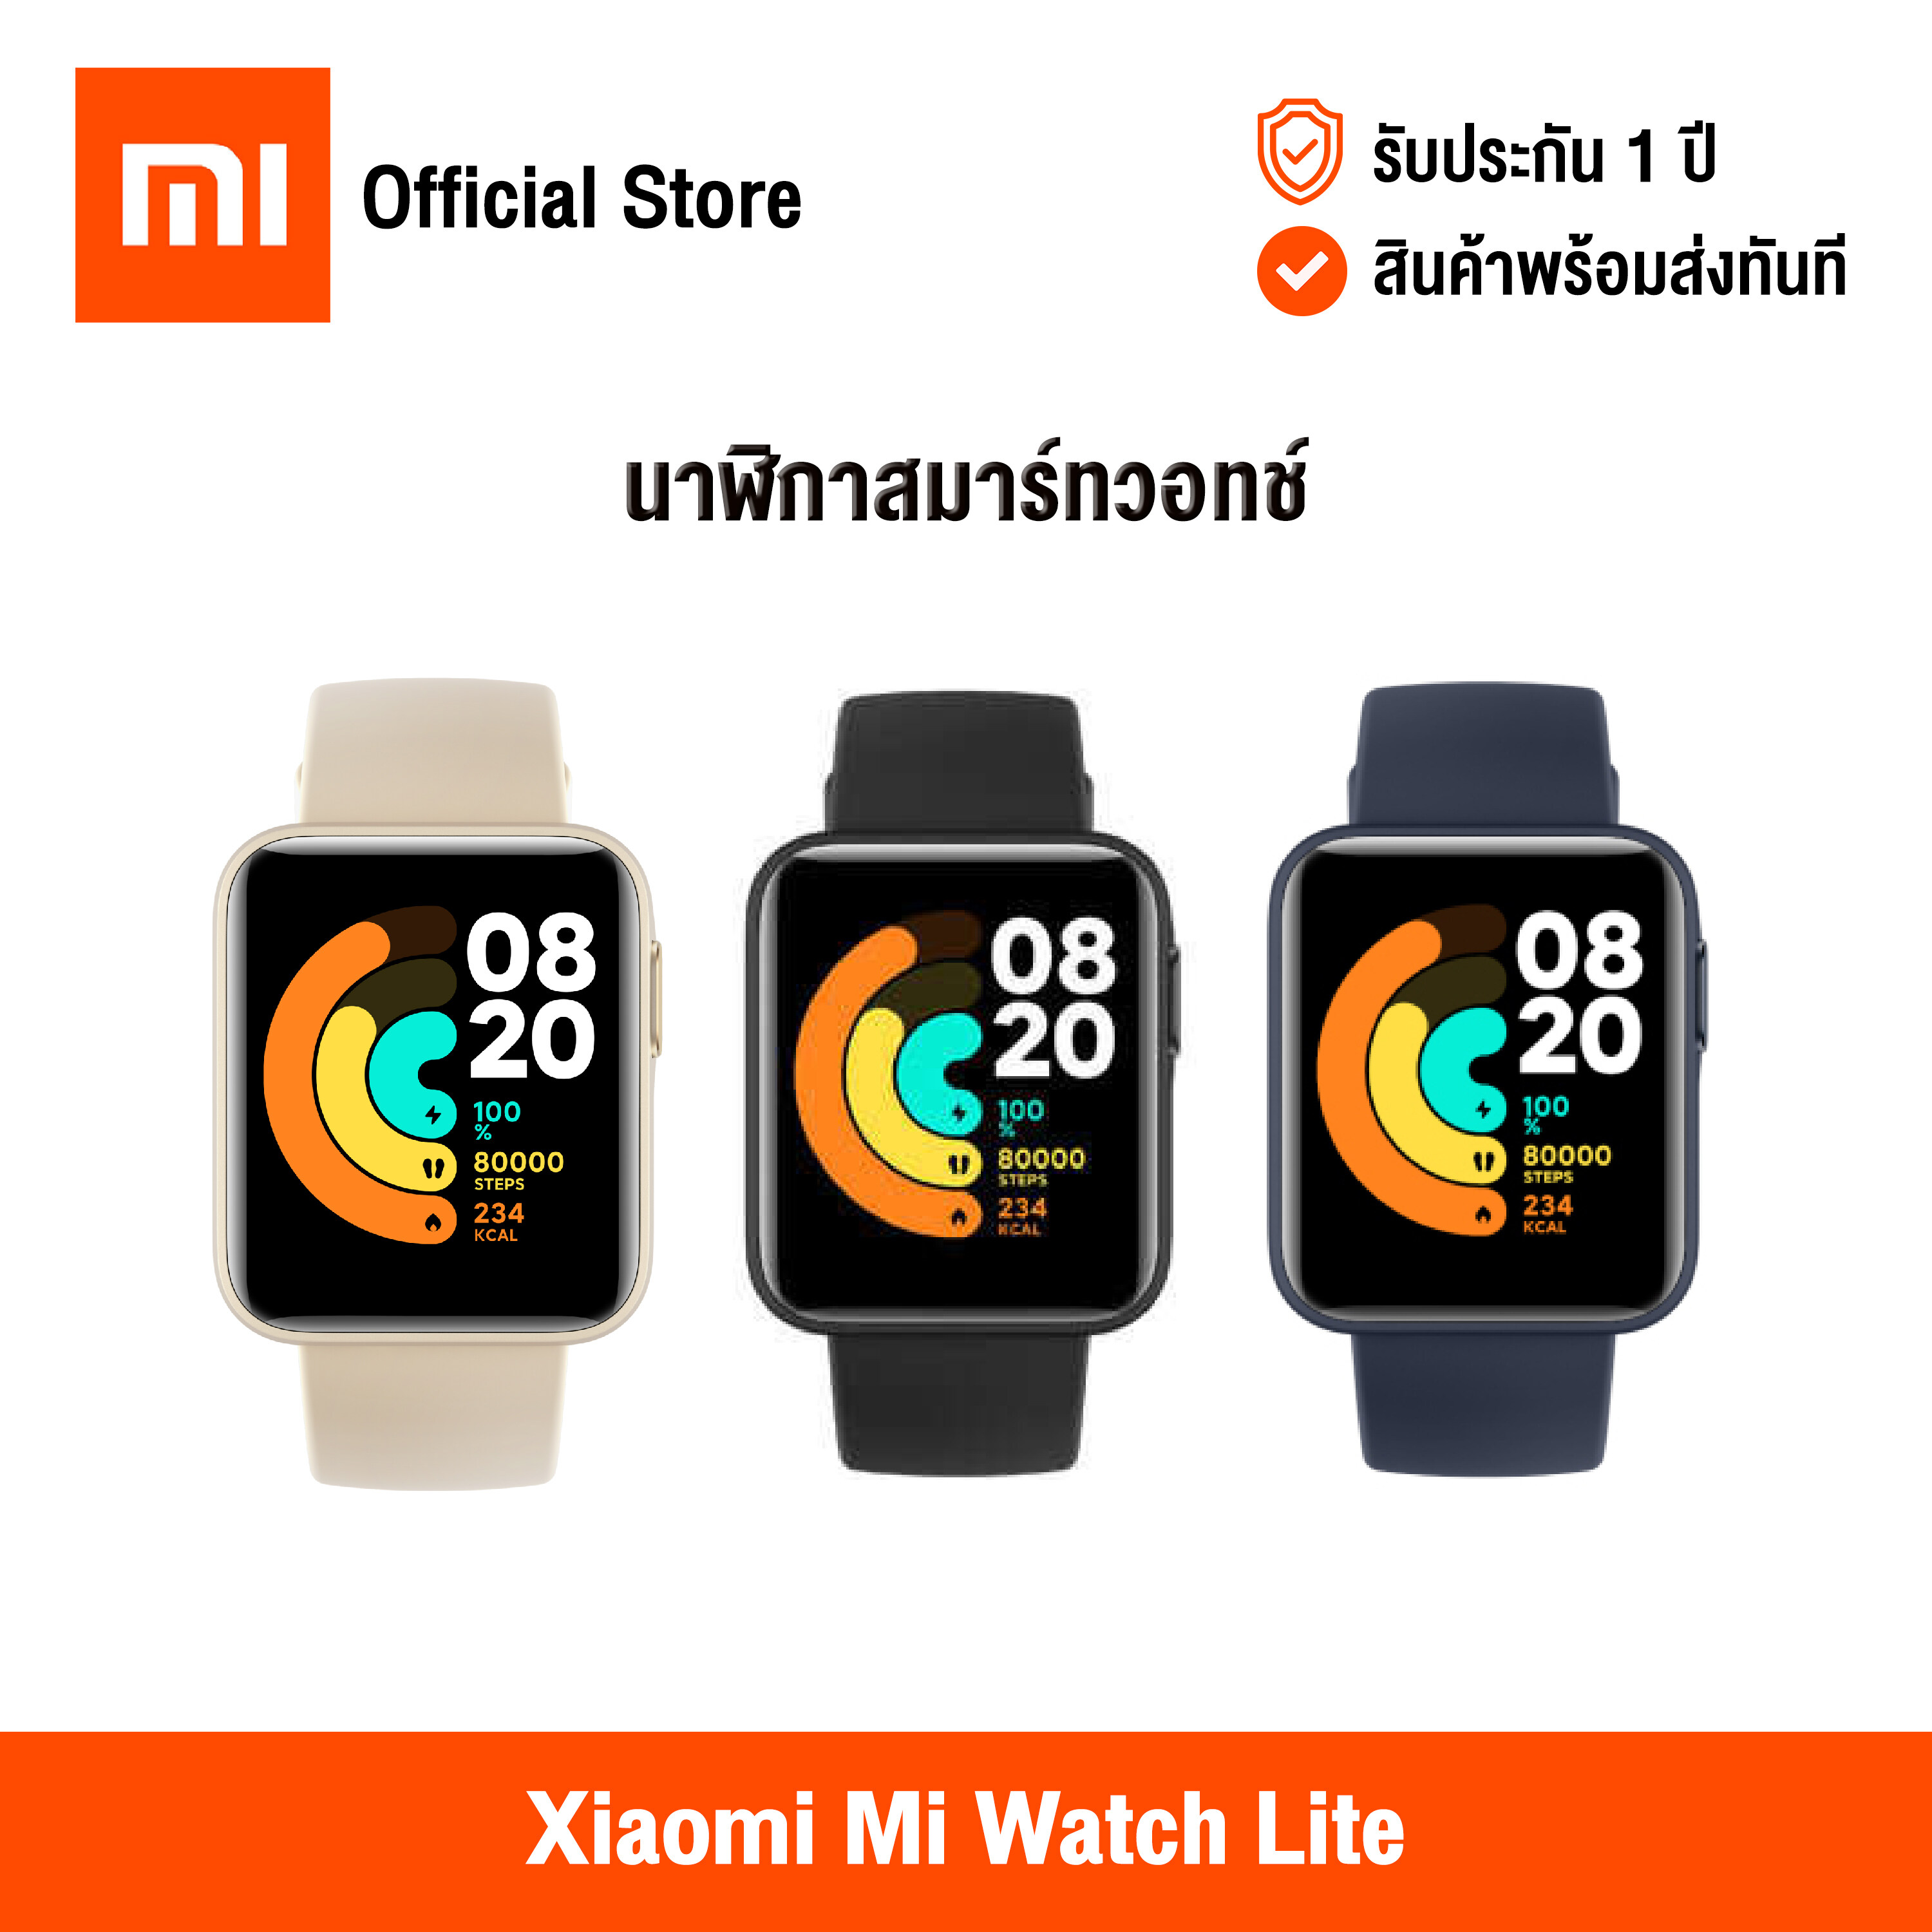 [ศูนย์ไทย] Xiaomi Mi Watch Lite (Global Version) เสี่ยวหมี่ นาฬิกาสมาร์ทวอทช์ หน้าจอสัมผัส ขนาด 1.4 นิ้ว กันน้ำ วัดอัตราการเต้นของหัวใจ